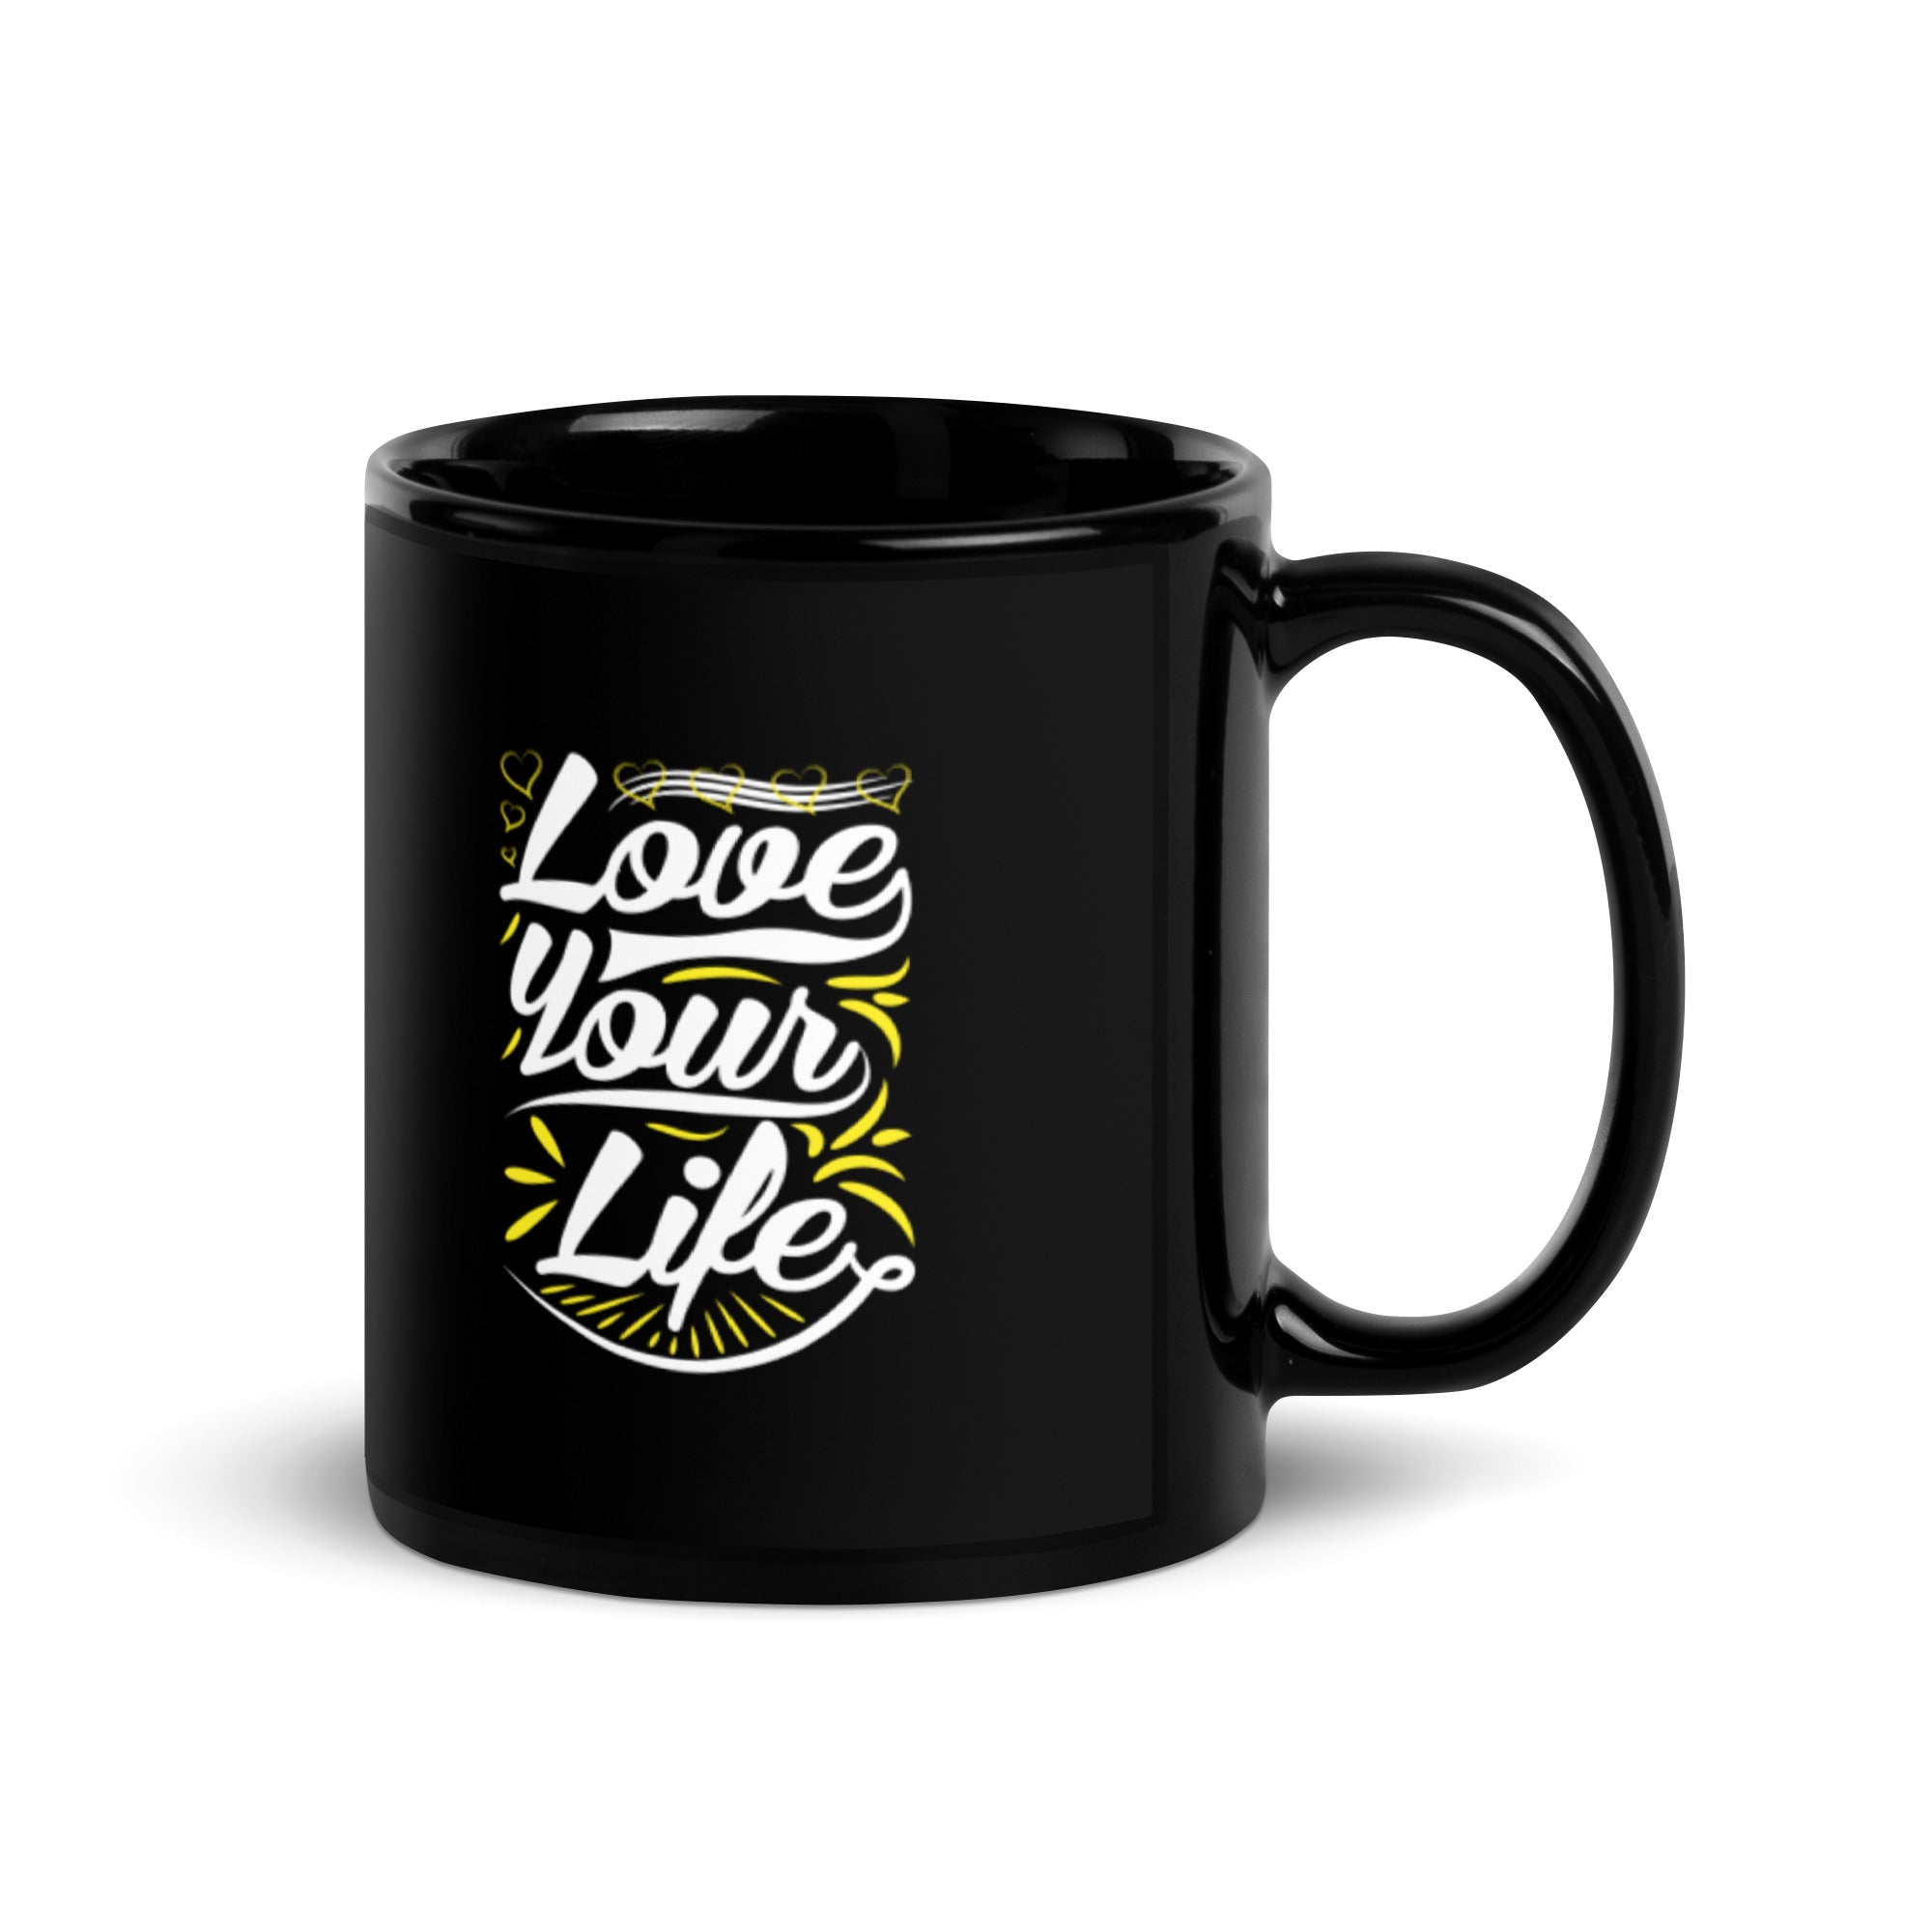 Love Your Life - Black Glossy Mug